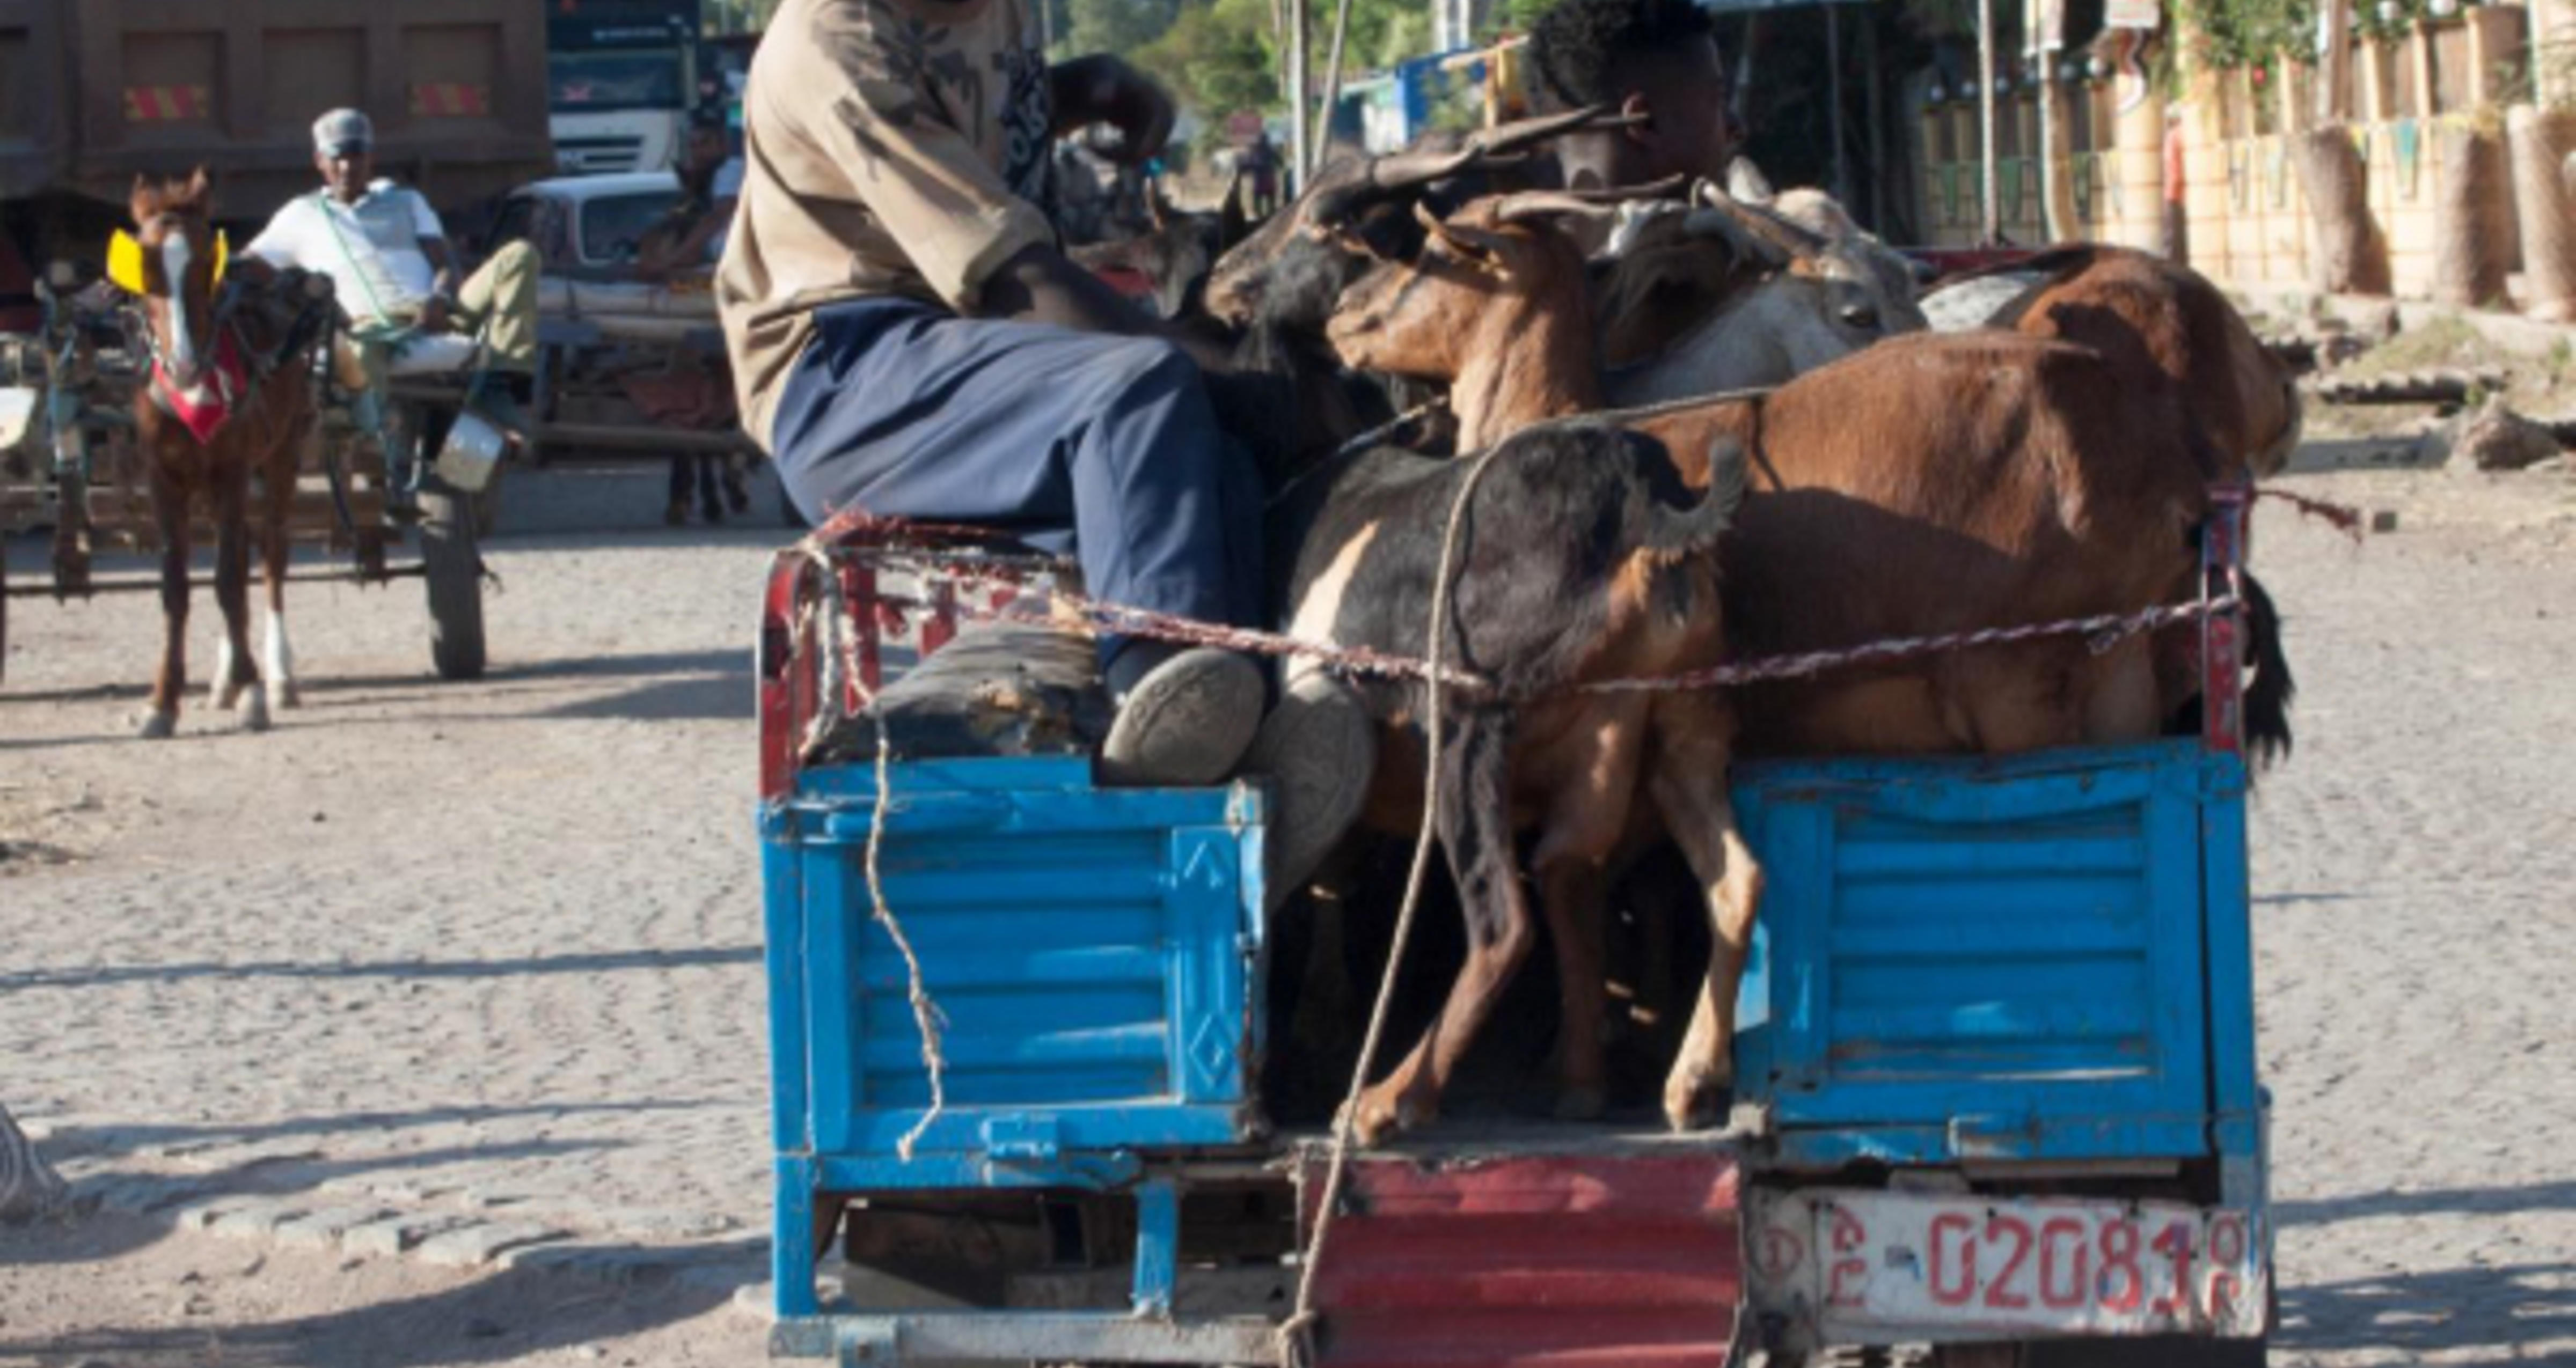 Transport of men and animals in Ethiopia.